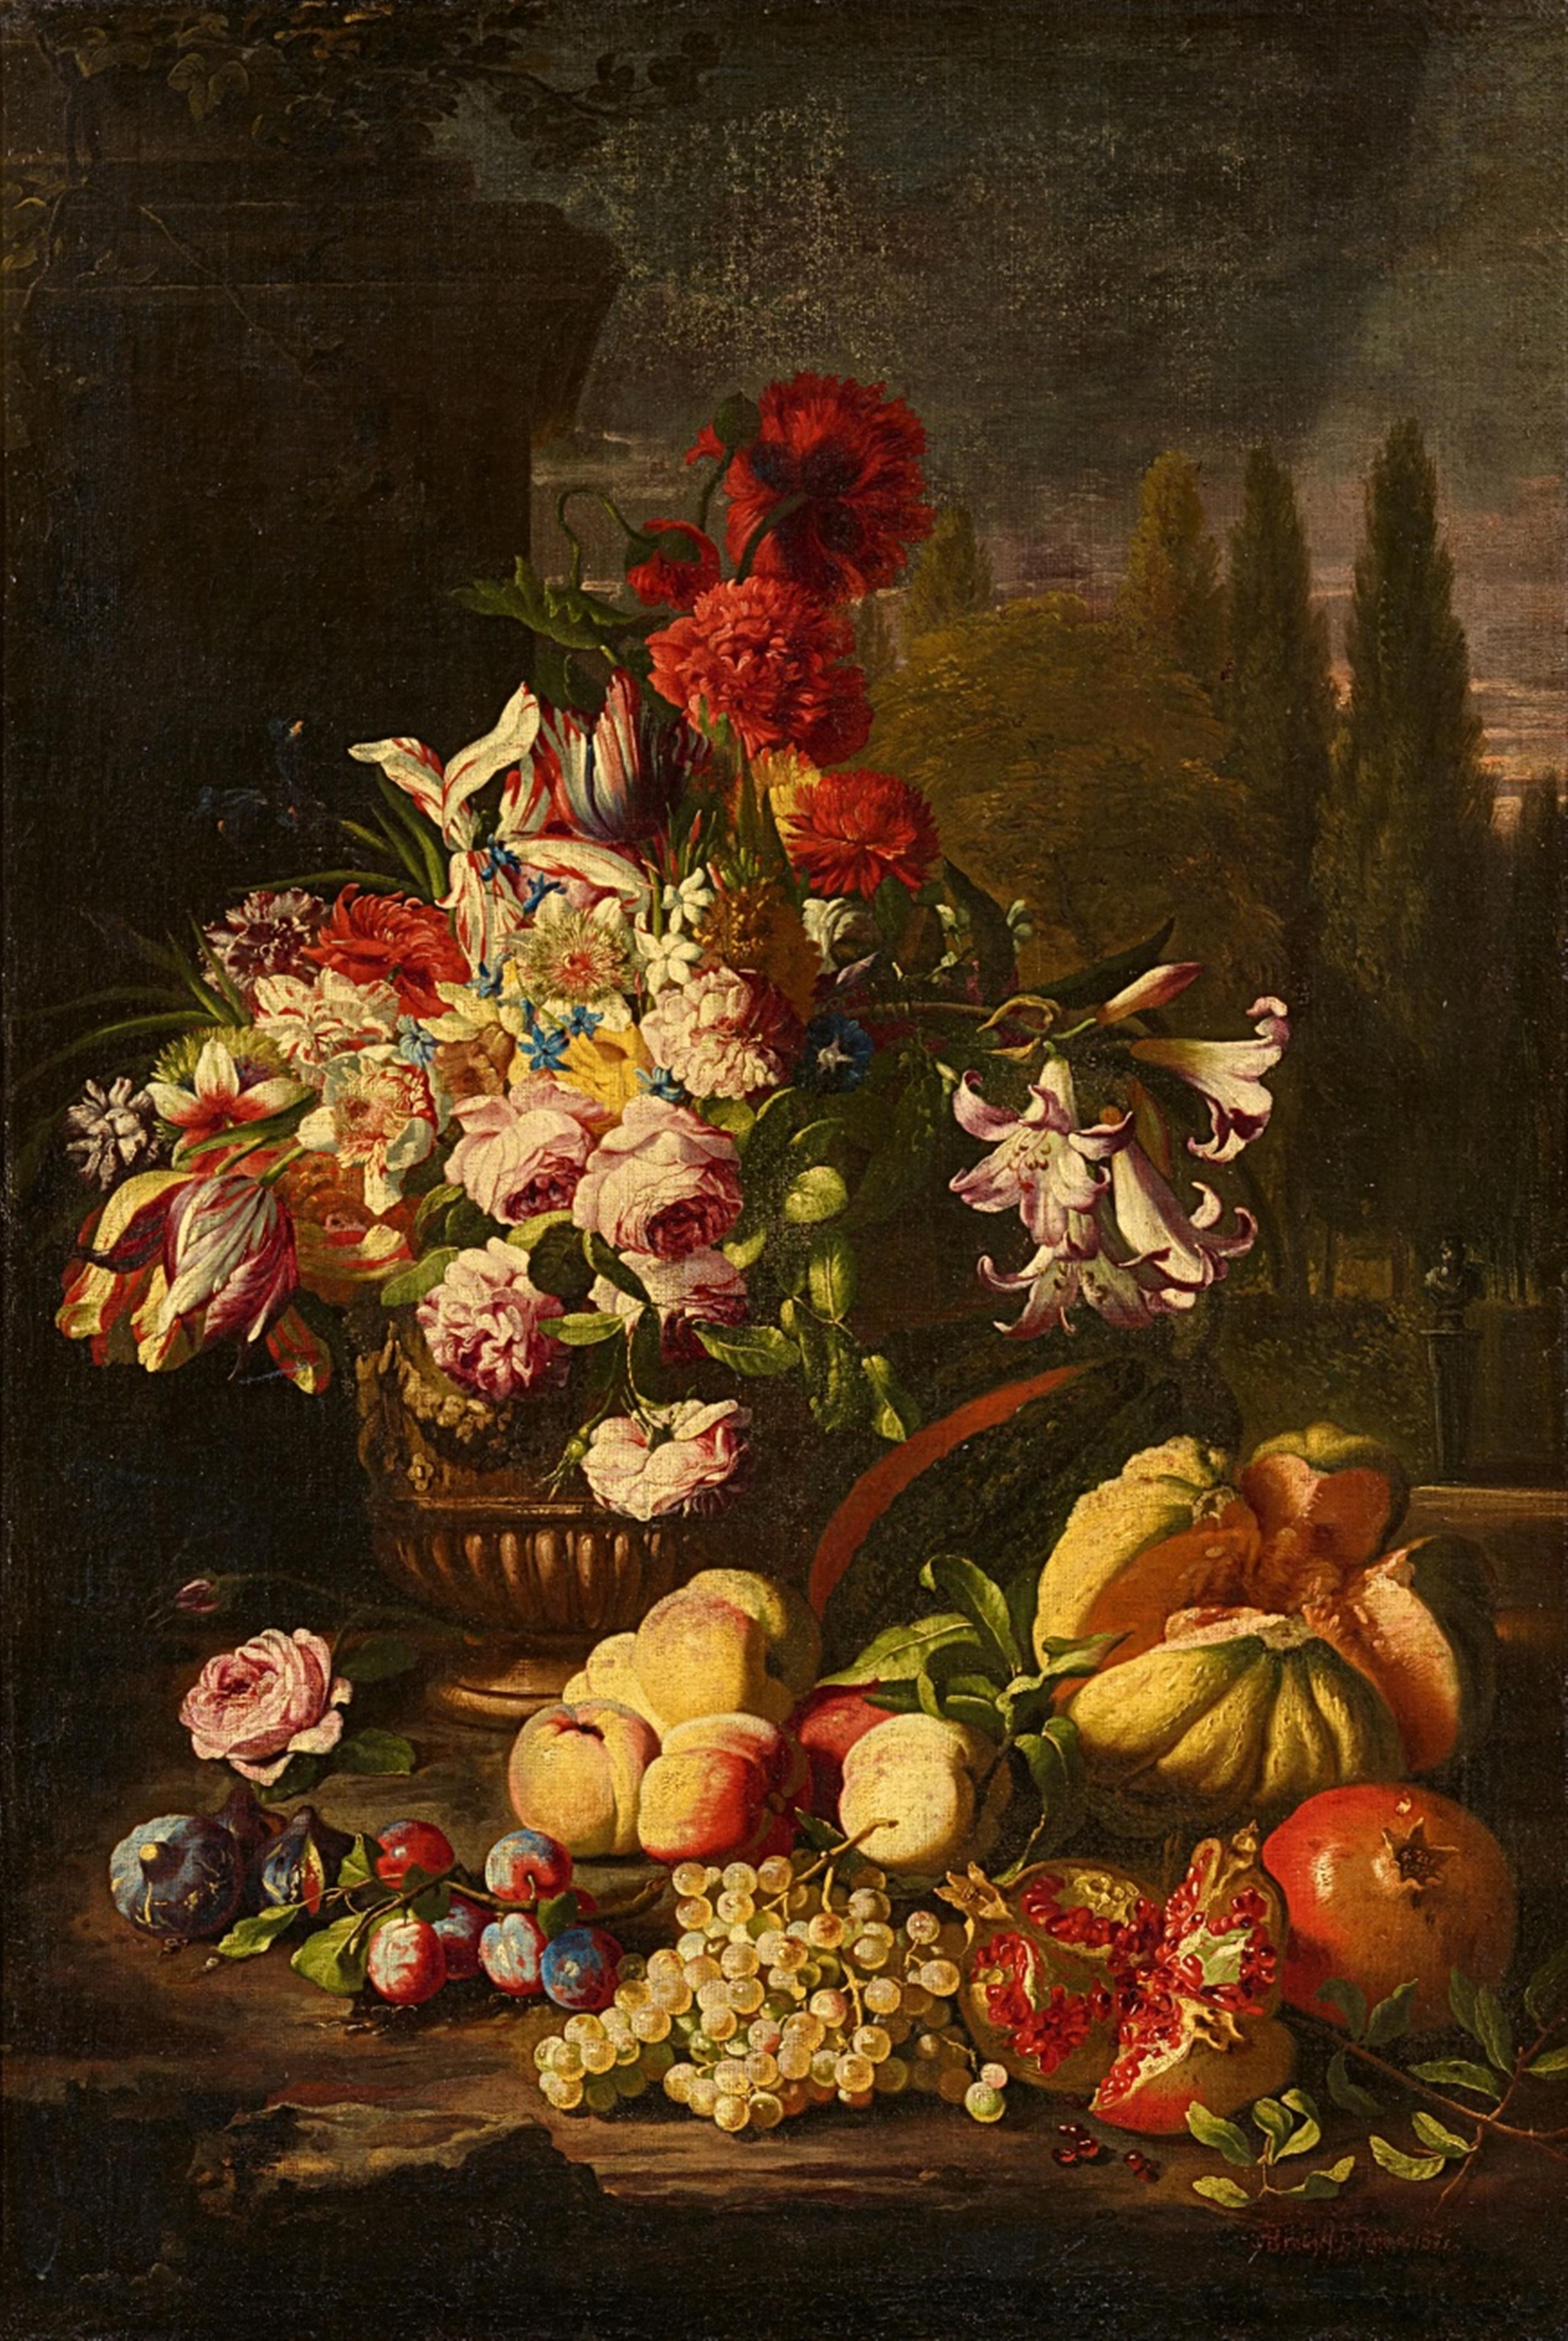 Abraham Brueghel - Flower and Fruit Still Life in a Park Landscape - image-1